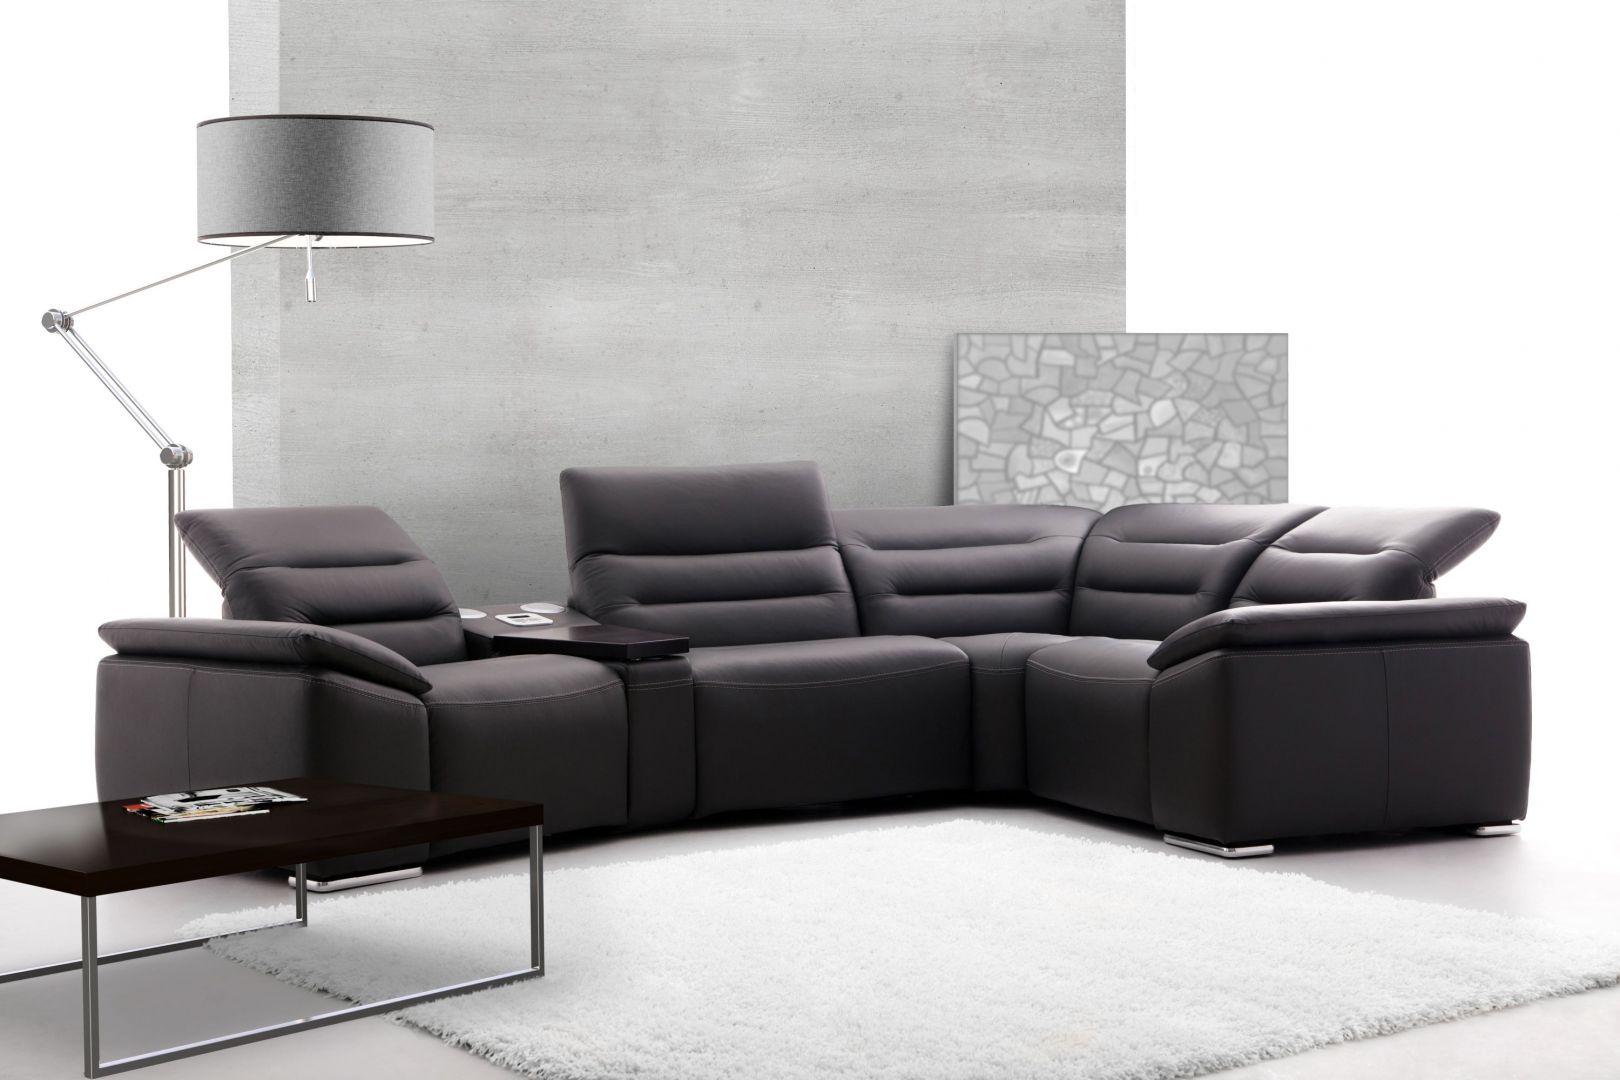 Wśród produktów marki Etap Sofa kolekcję „Impressione” wyposażono w elektryczną lub manualną funkcję relaksu oraz system audio. Fot. Etap Sofa